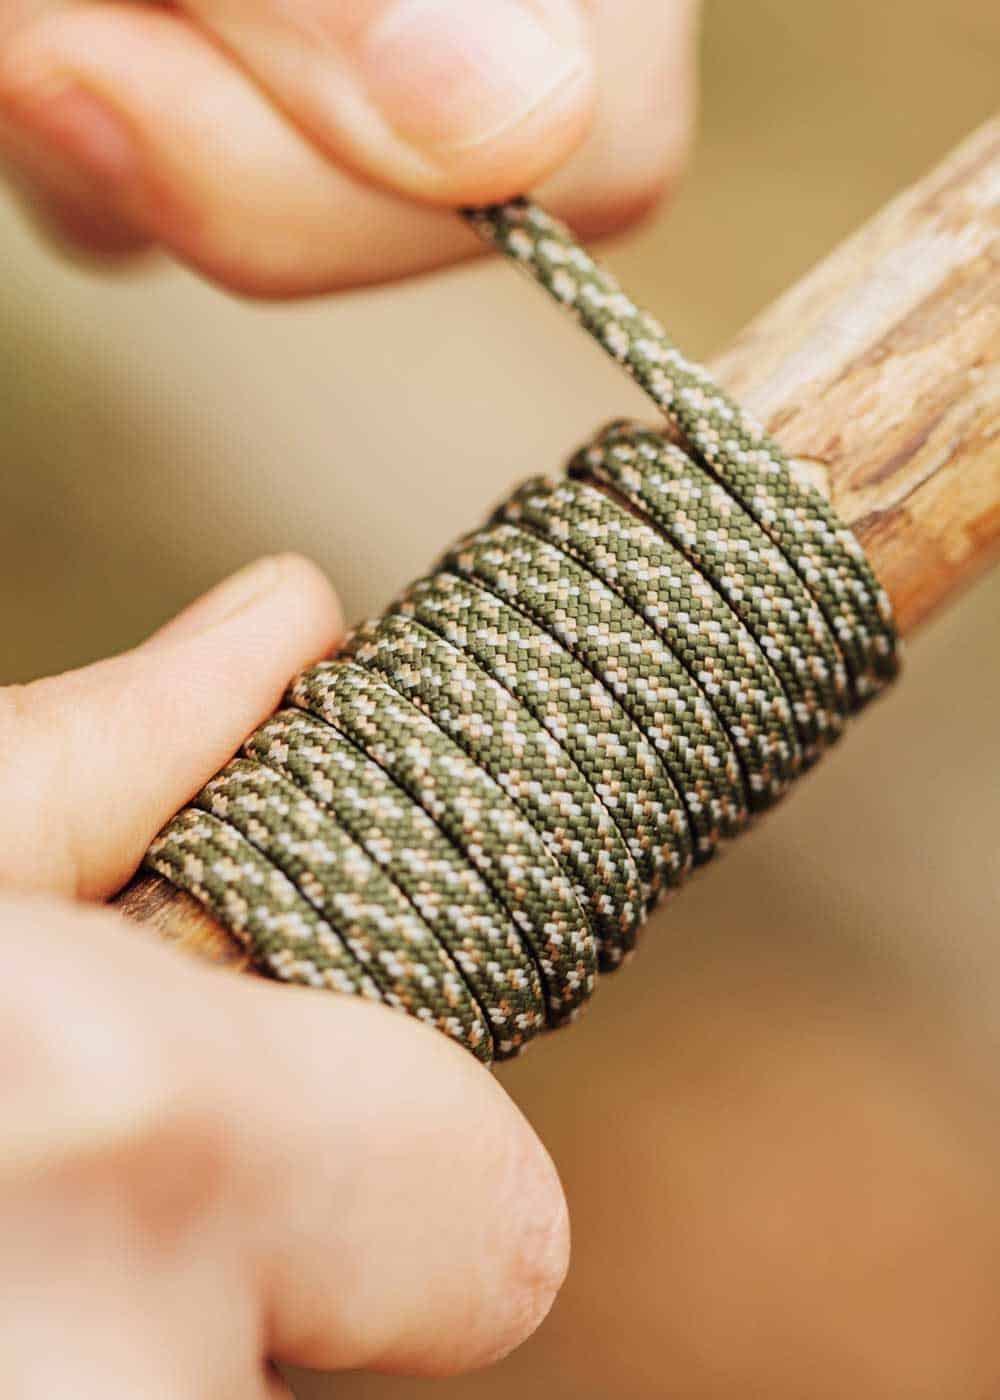 bushcraft knot skills